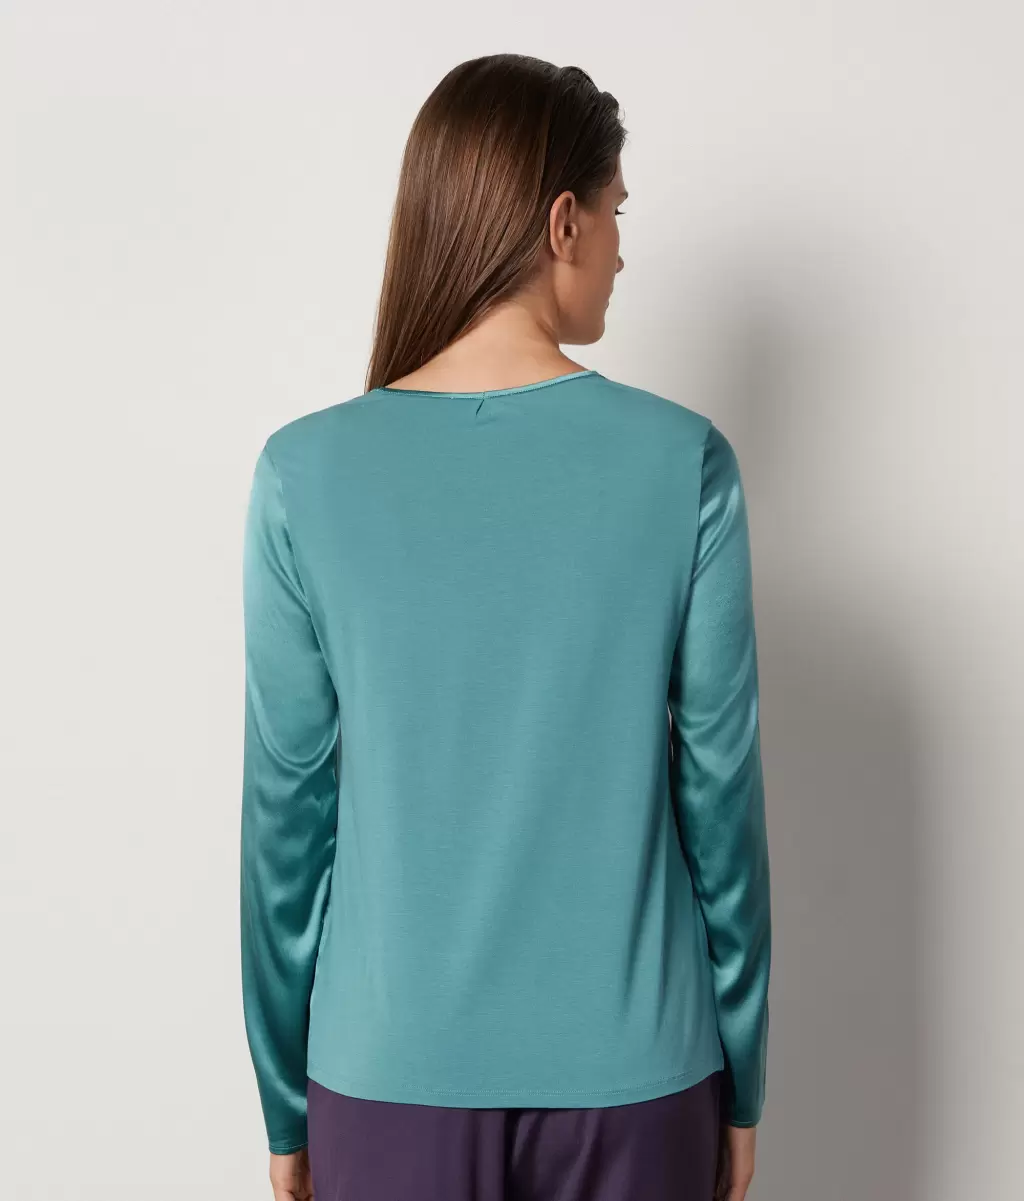 Bluzka Z Okrągłym Dekoltem Z Satyny Jedwabnej Green Falconeri Koszule I Bluzki Kobieta - 2